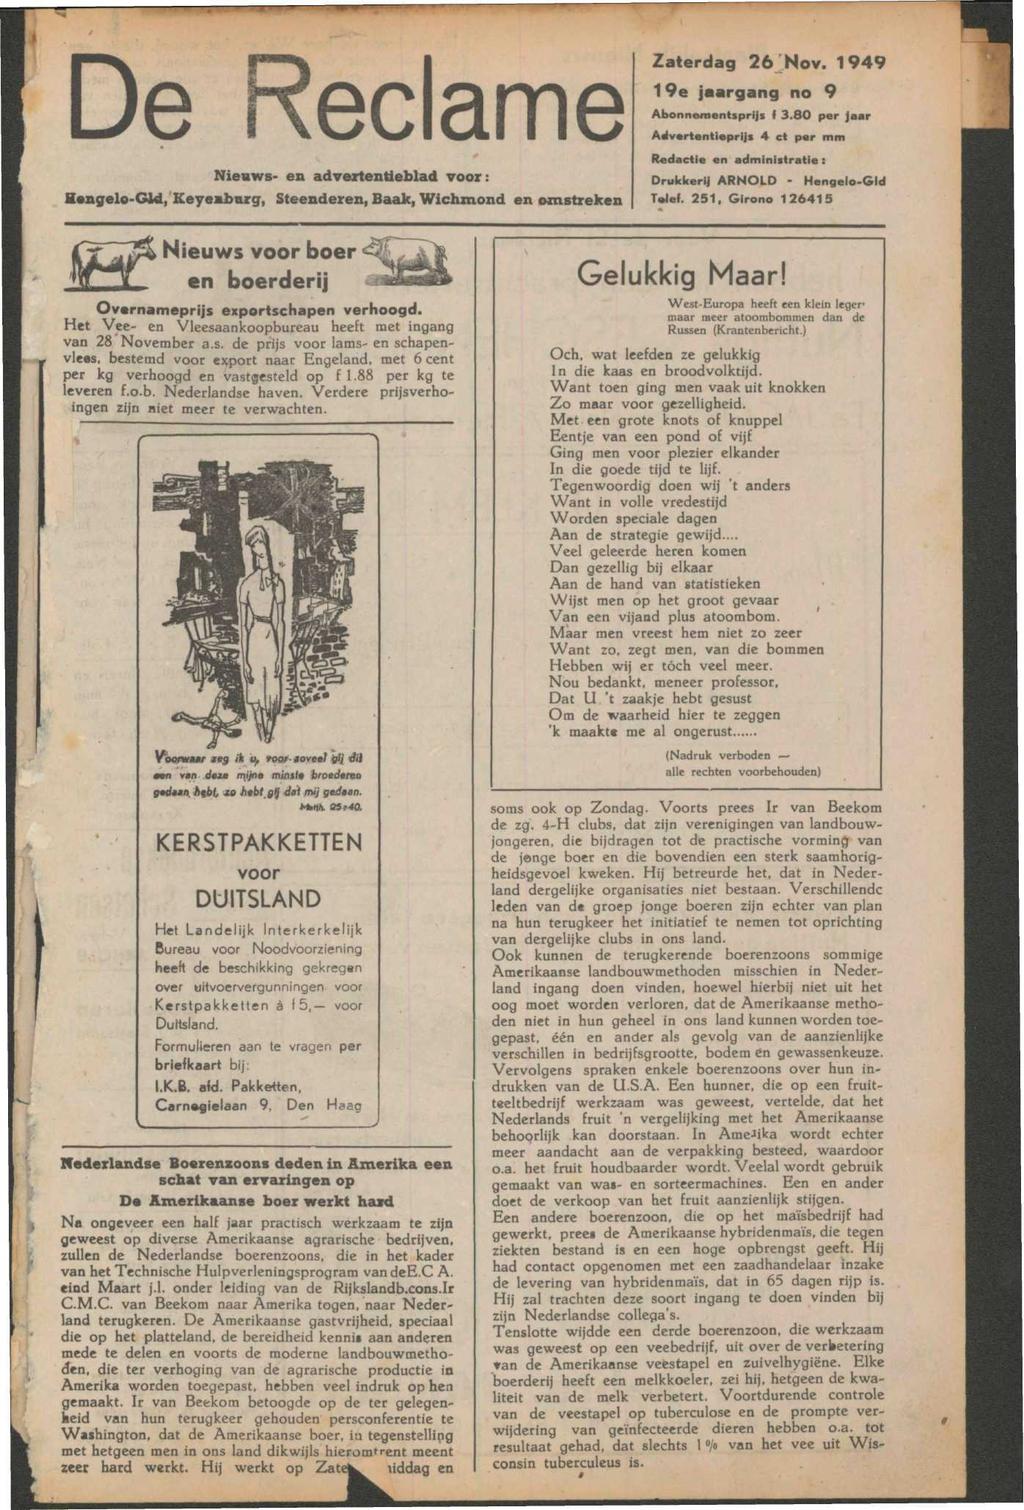 De ame Nieuws- en advertentieblad voor: Hengelo - GOd, Keyemburg, Steenderen, Baak, Wichznond en omstreken Zaterdag 26 Nov. 1949 19e jaargang no 9 Abonnementsprijs f 3.